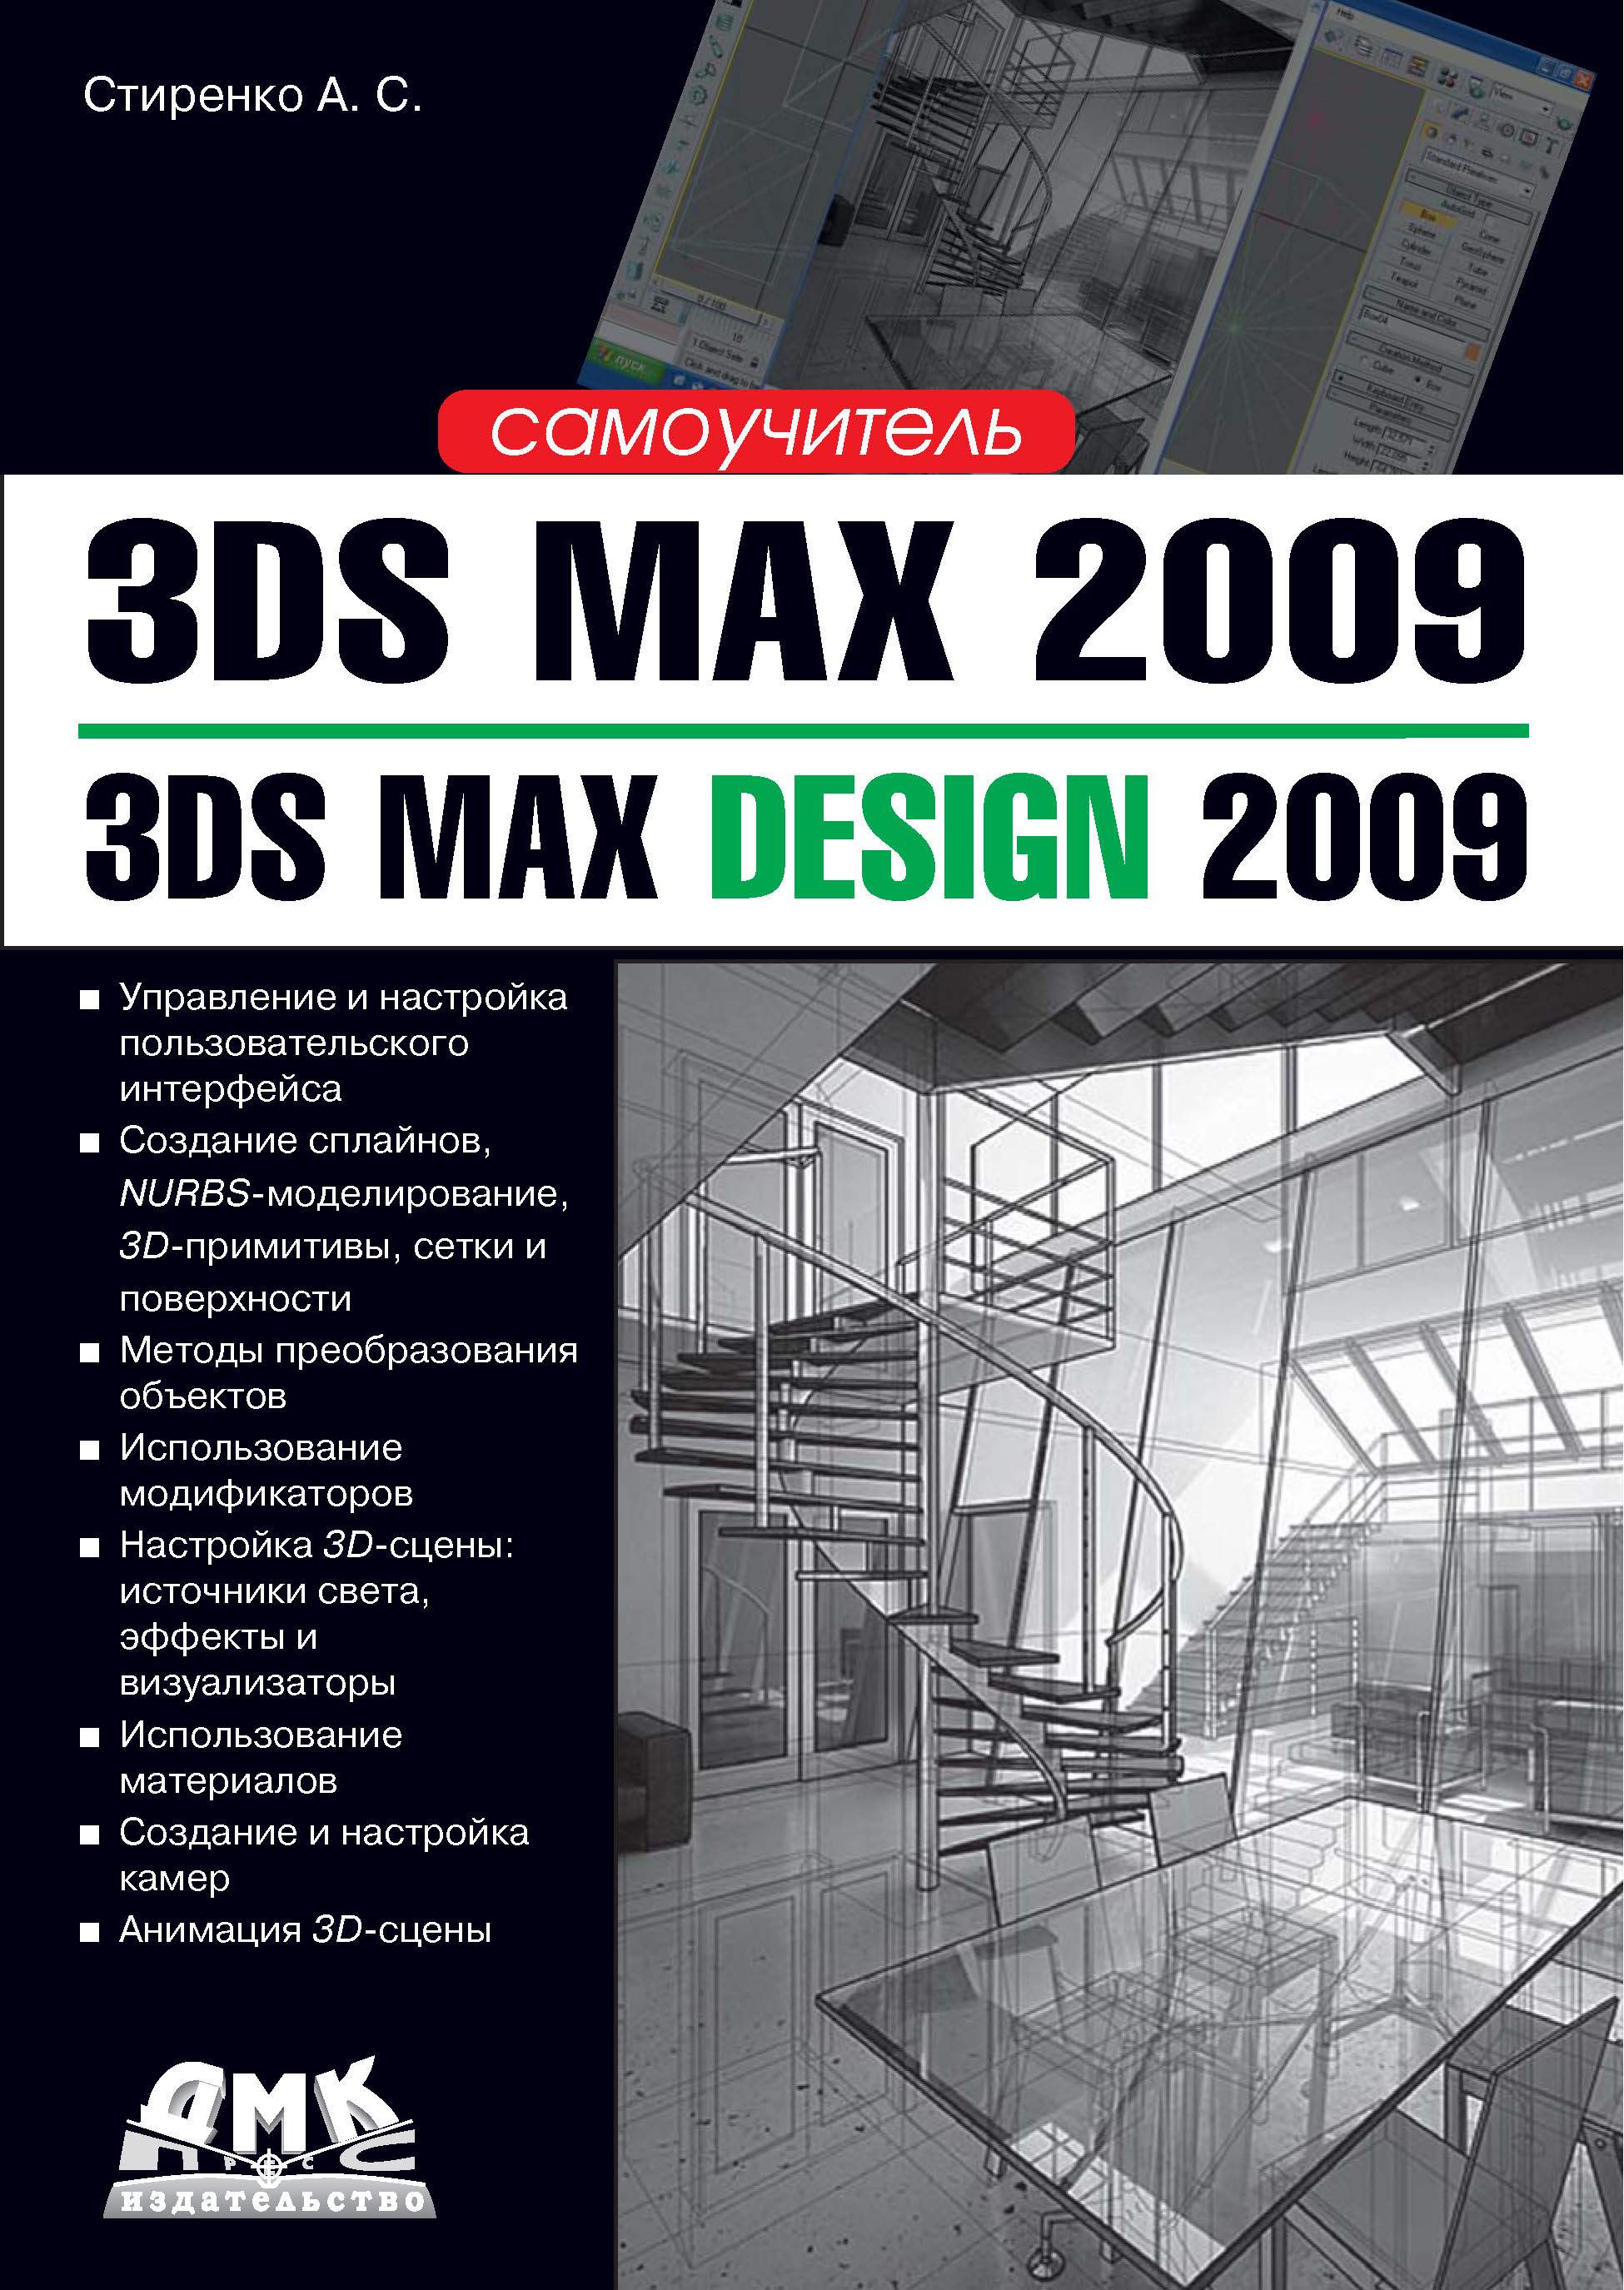 Книга  3ds Max 2009 / 3ds Max Design 2009. Самоучитель созданная А. С. Стиренко может относится к жанру программы, руководства. Стоимость электронной книги 3ds Max 2009 / 3ds Max Design 2009. Самоучитель с идентификатором 6295624 составляет 199.00 руб.